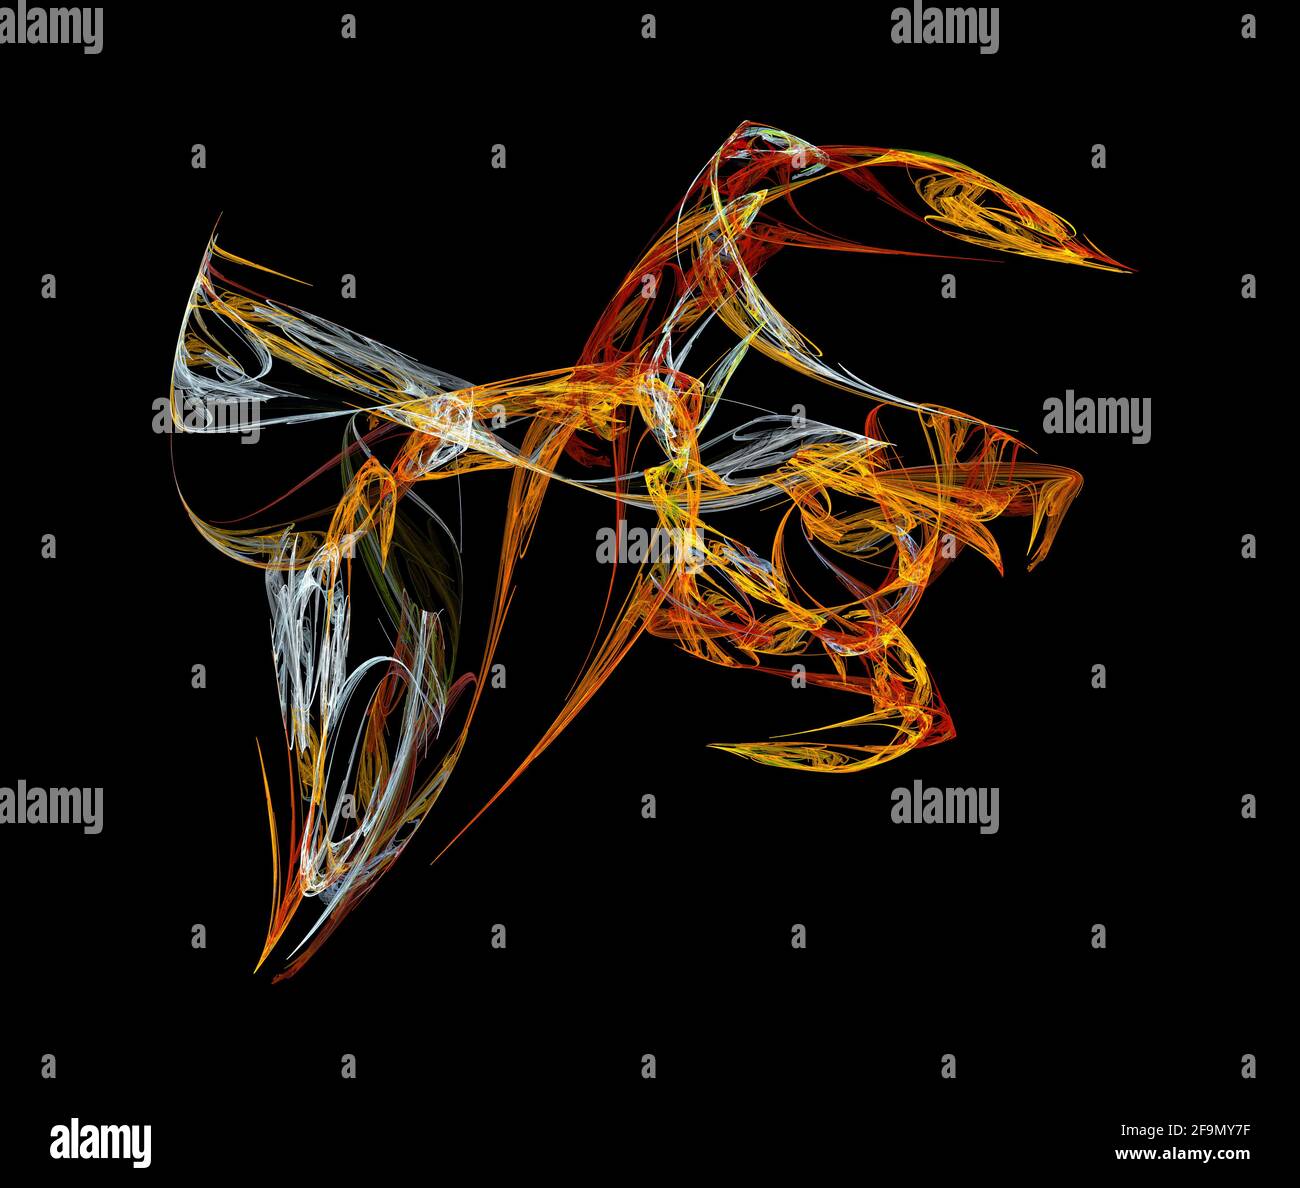 Image de flamme fractale surréaliste, créature abstraite d'art numérique colorée Banque D'Images